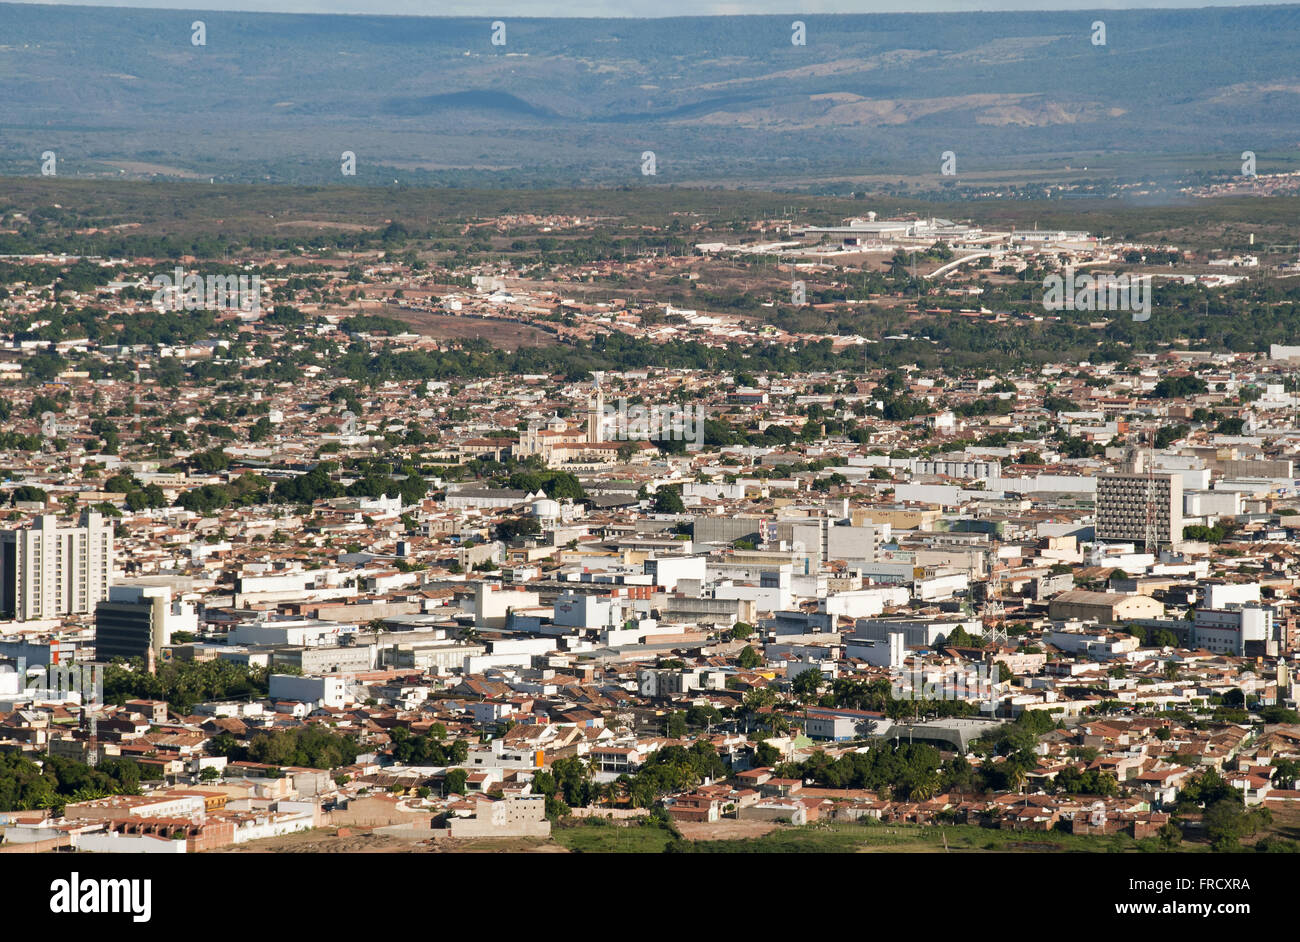 Top view of the city of Juazeiro do Norte in Ceara Stock Photo